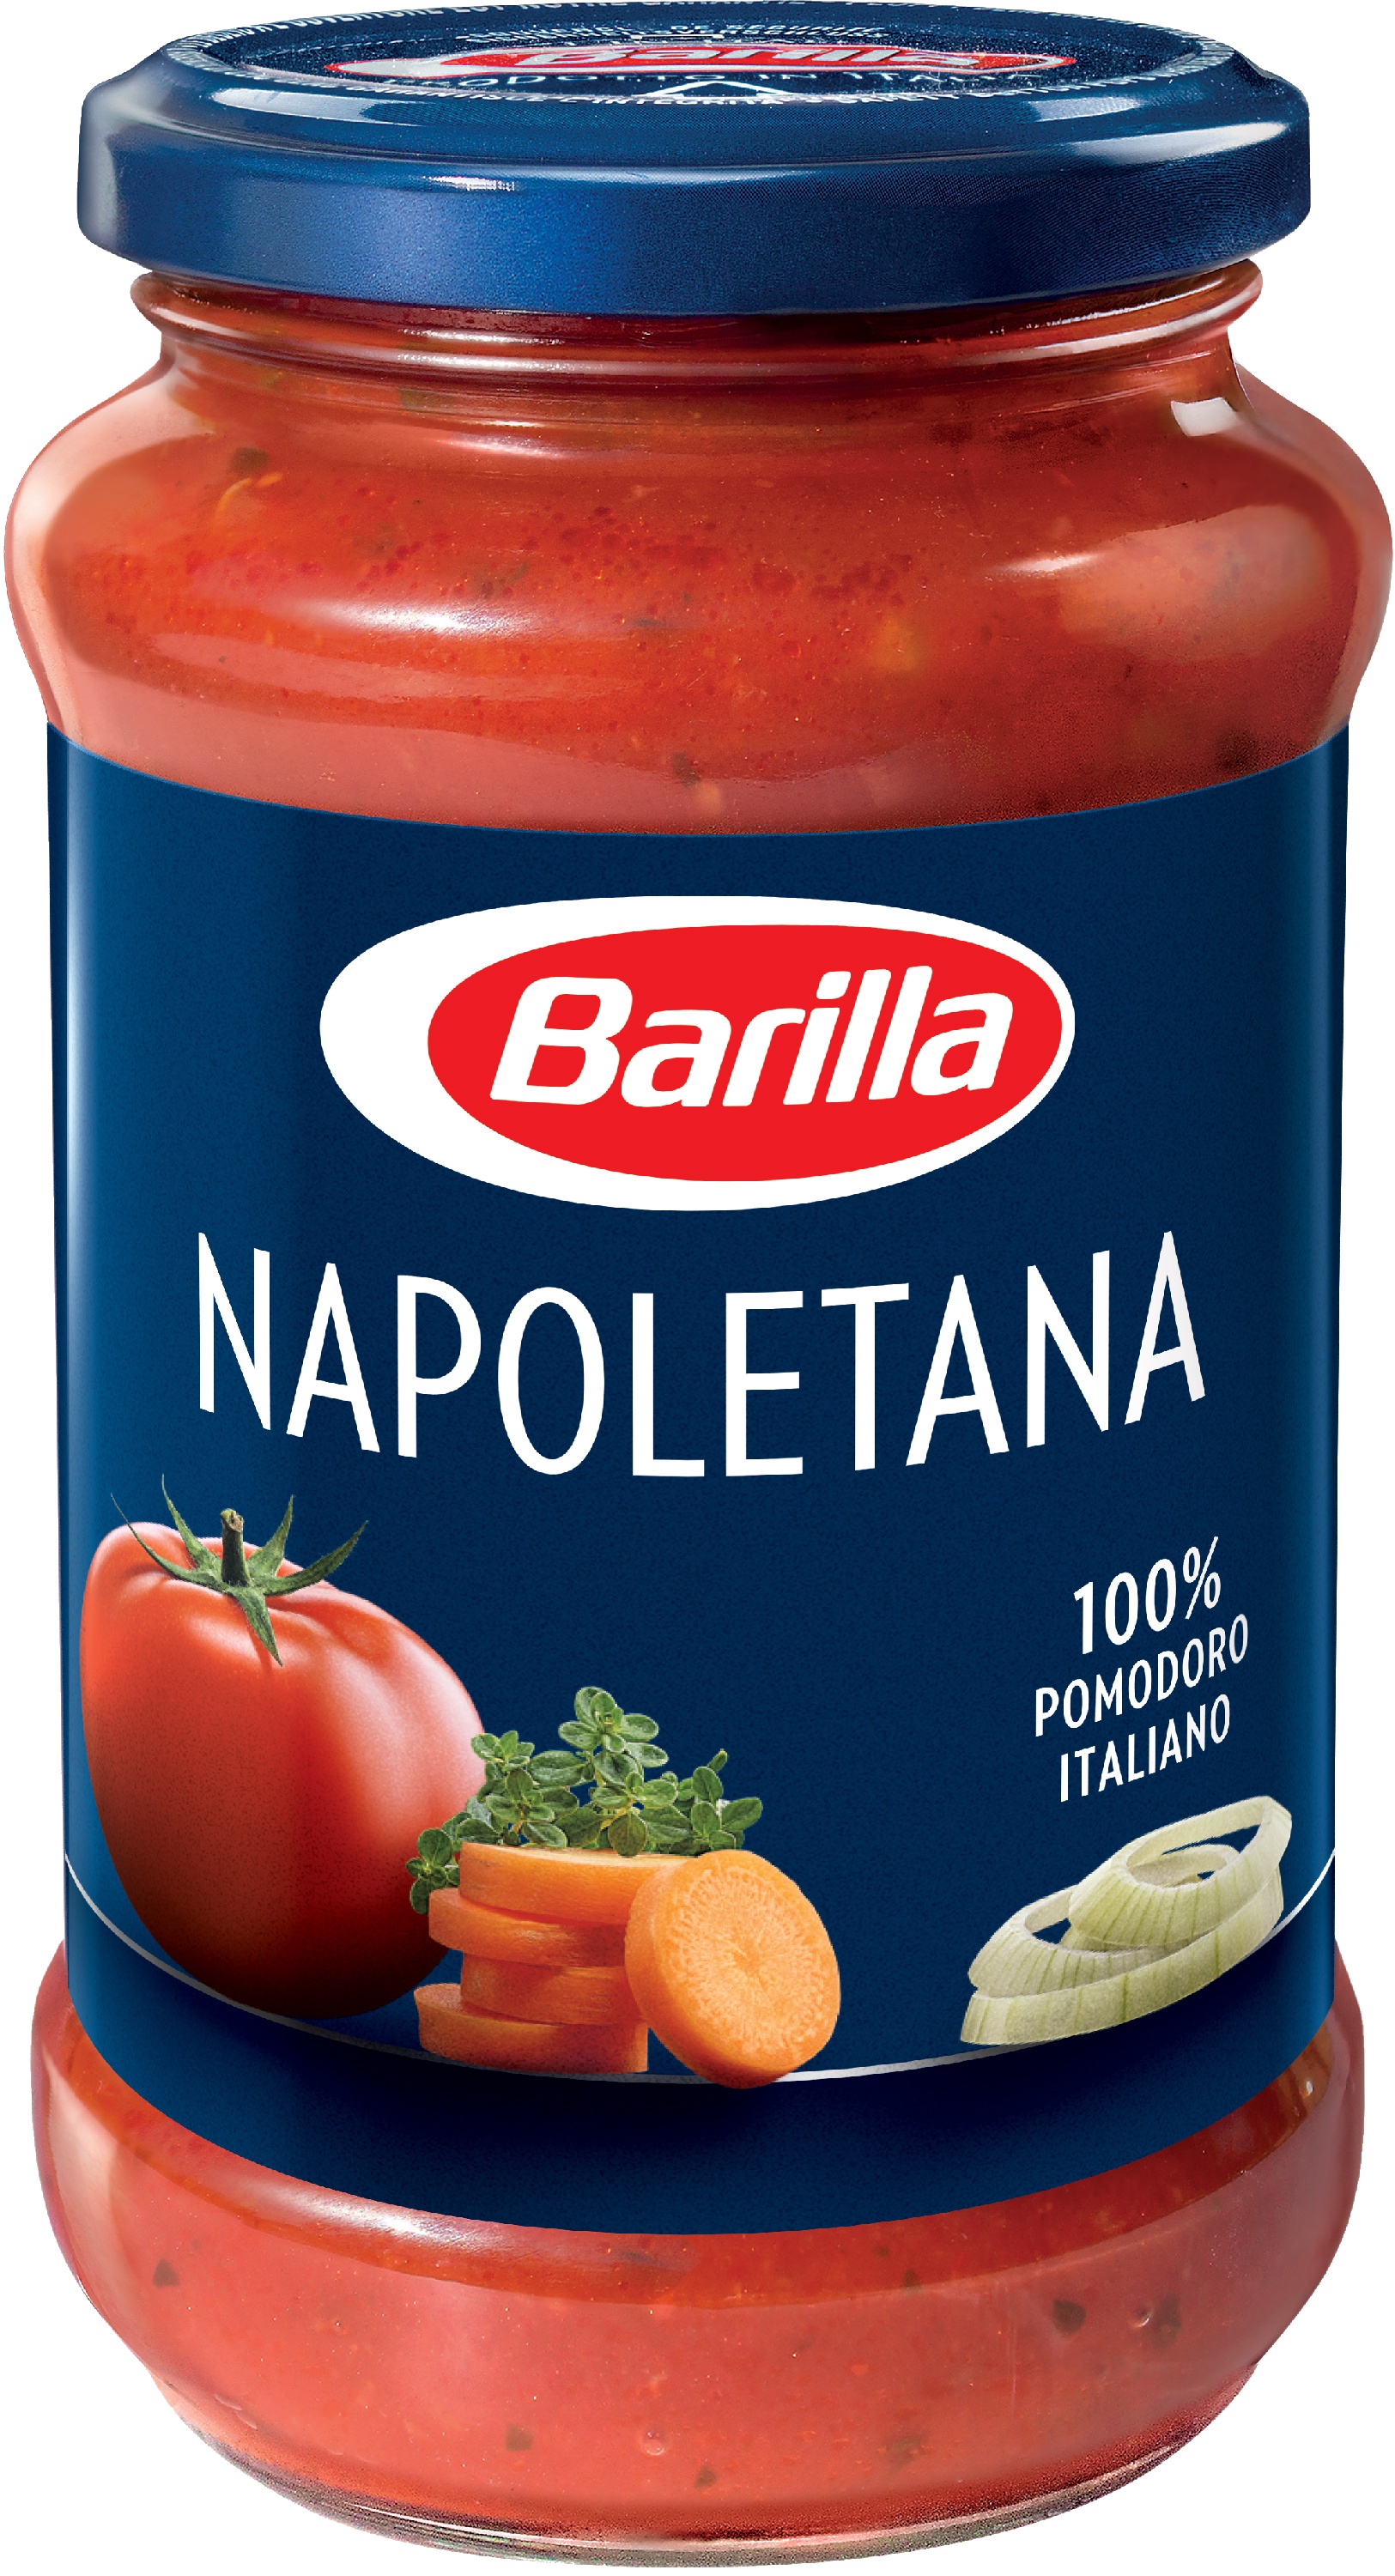 Slika za Sos napoletana sa paradajzom i začinina Barilla 400g